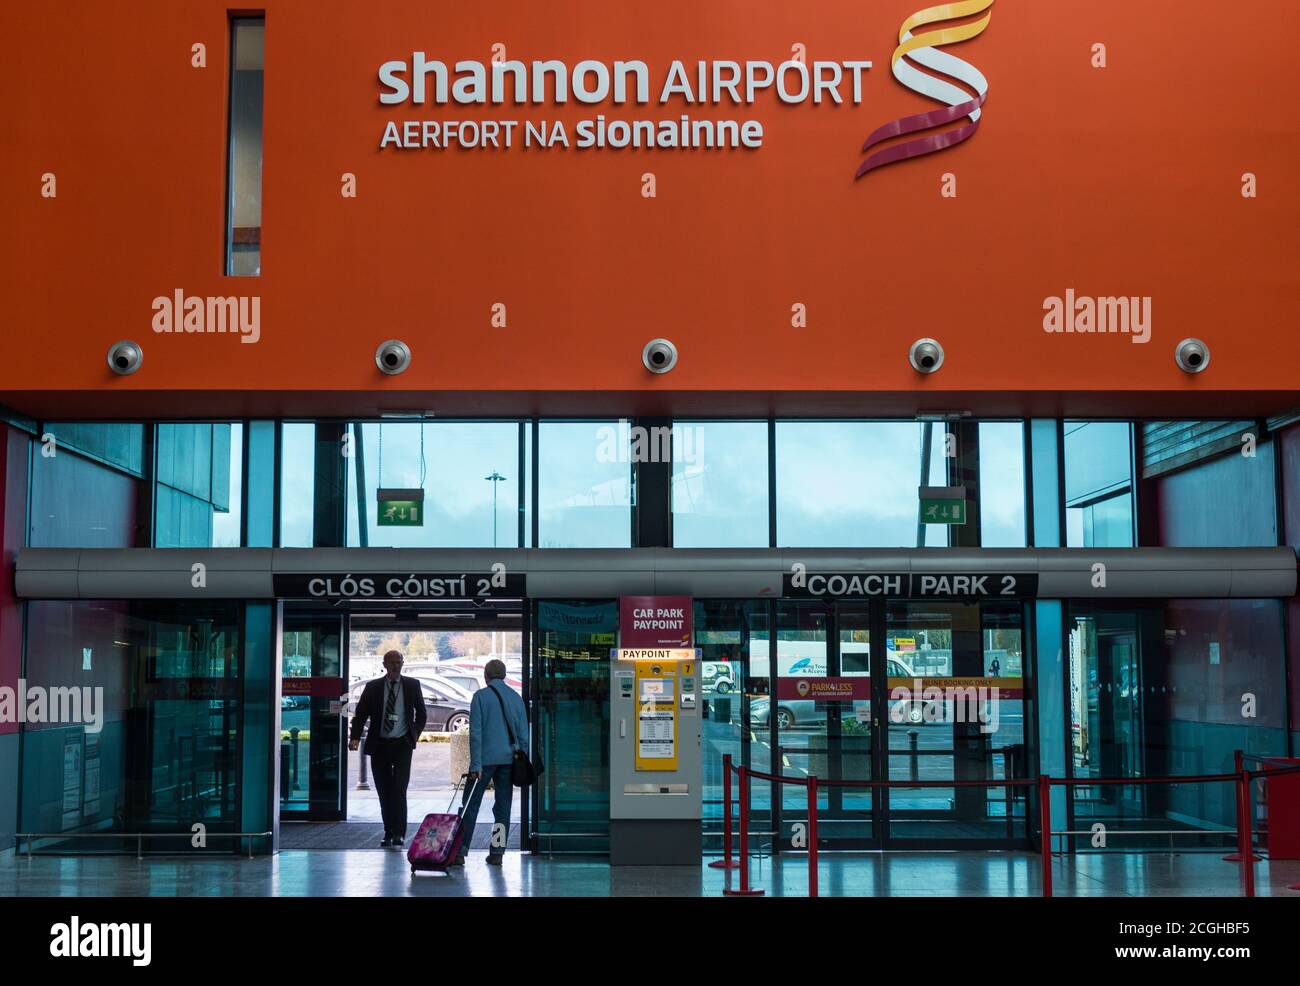 Aeroporto di Shannon, Irlanda - 21 novembre 2016: Un uomo con i bagagli cammina verso l'uscita dell'area partenze dell'aeroporto di Shannon. Foto Stock